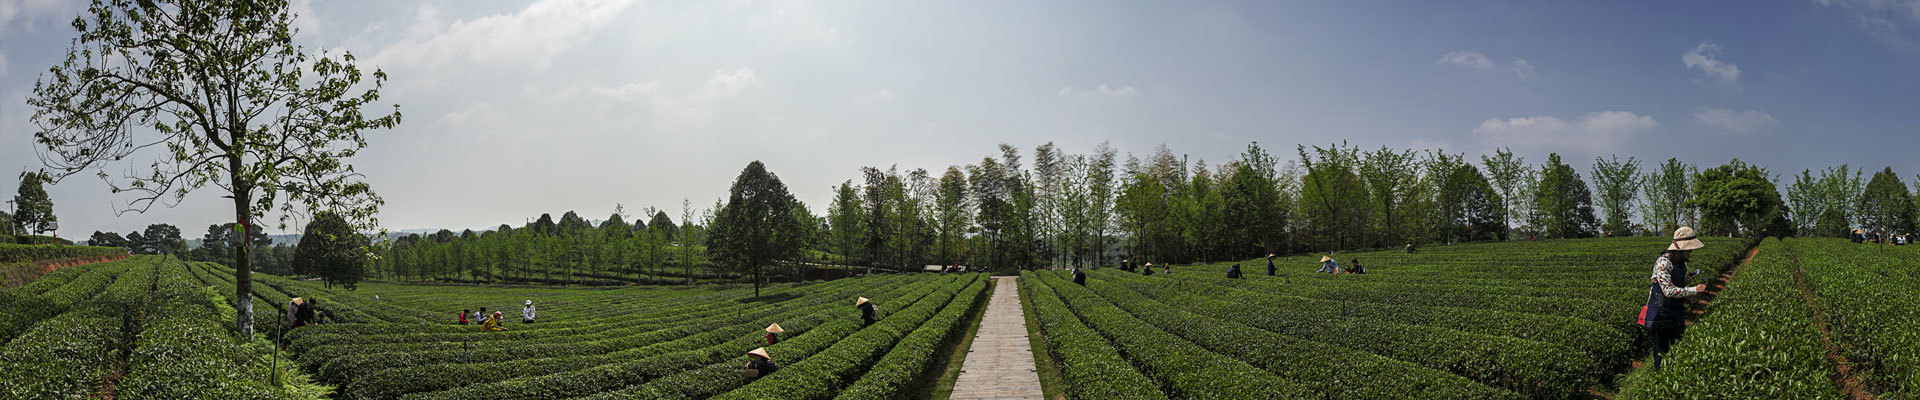 Kanai Hunan Tea Co., Ltd.